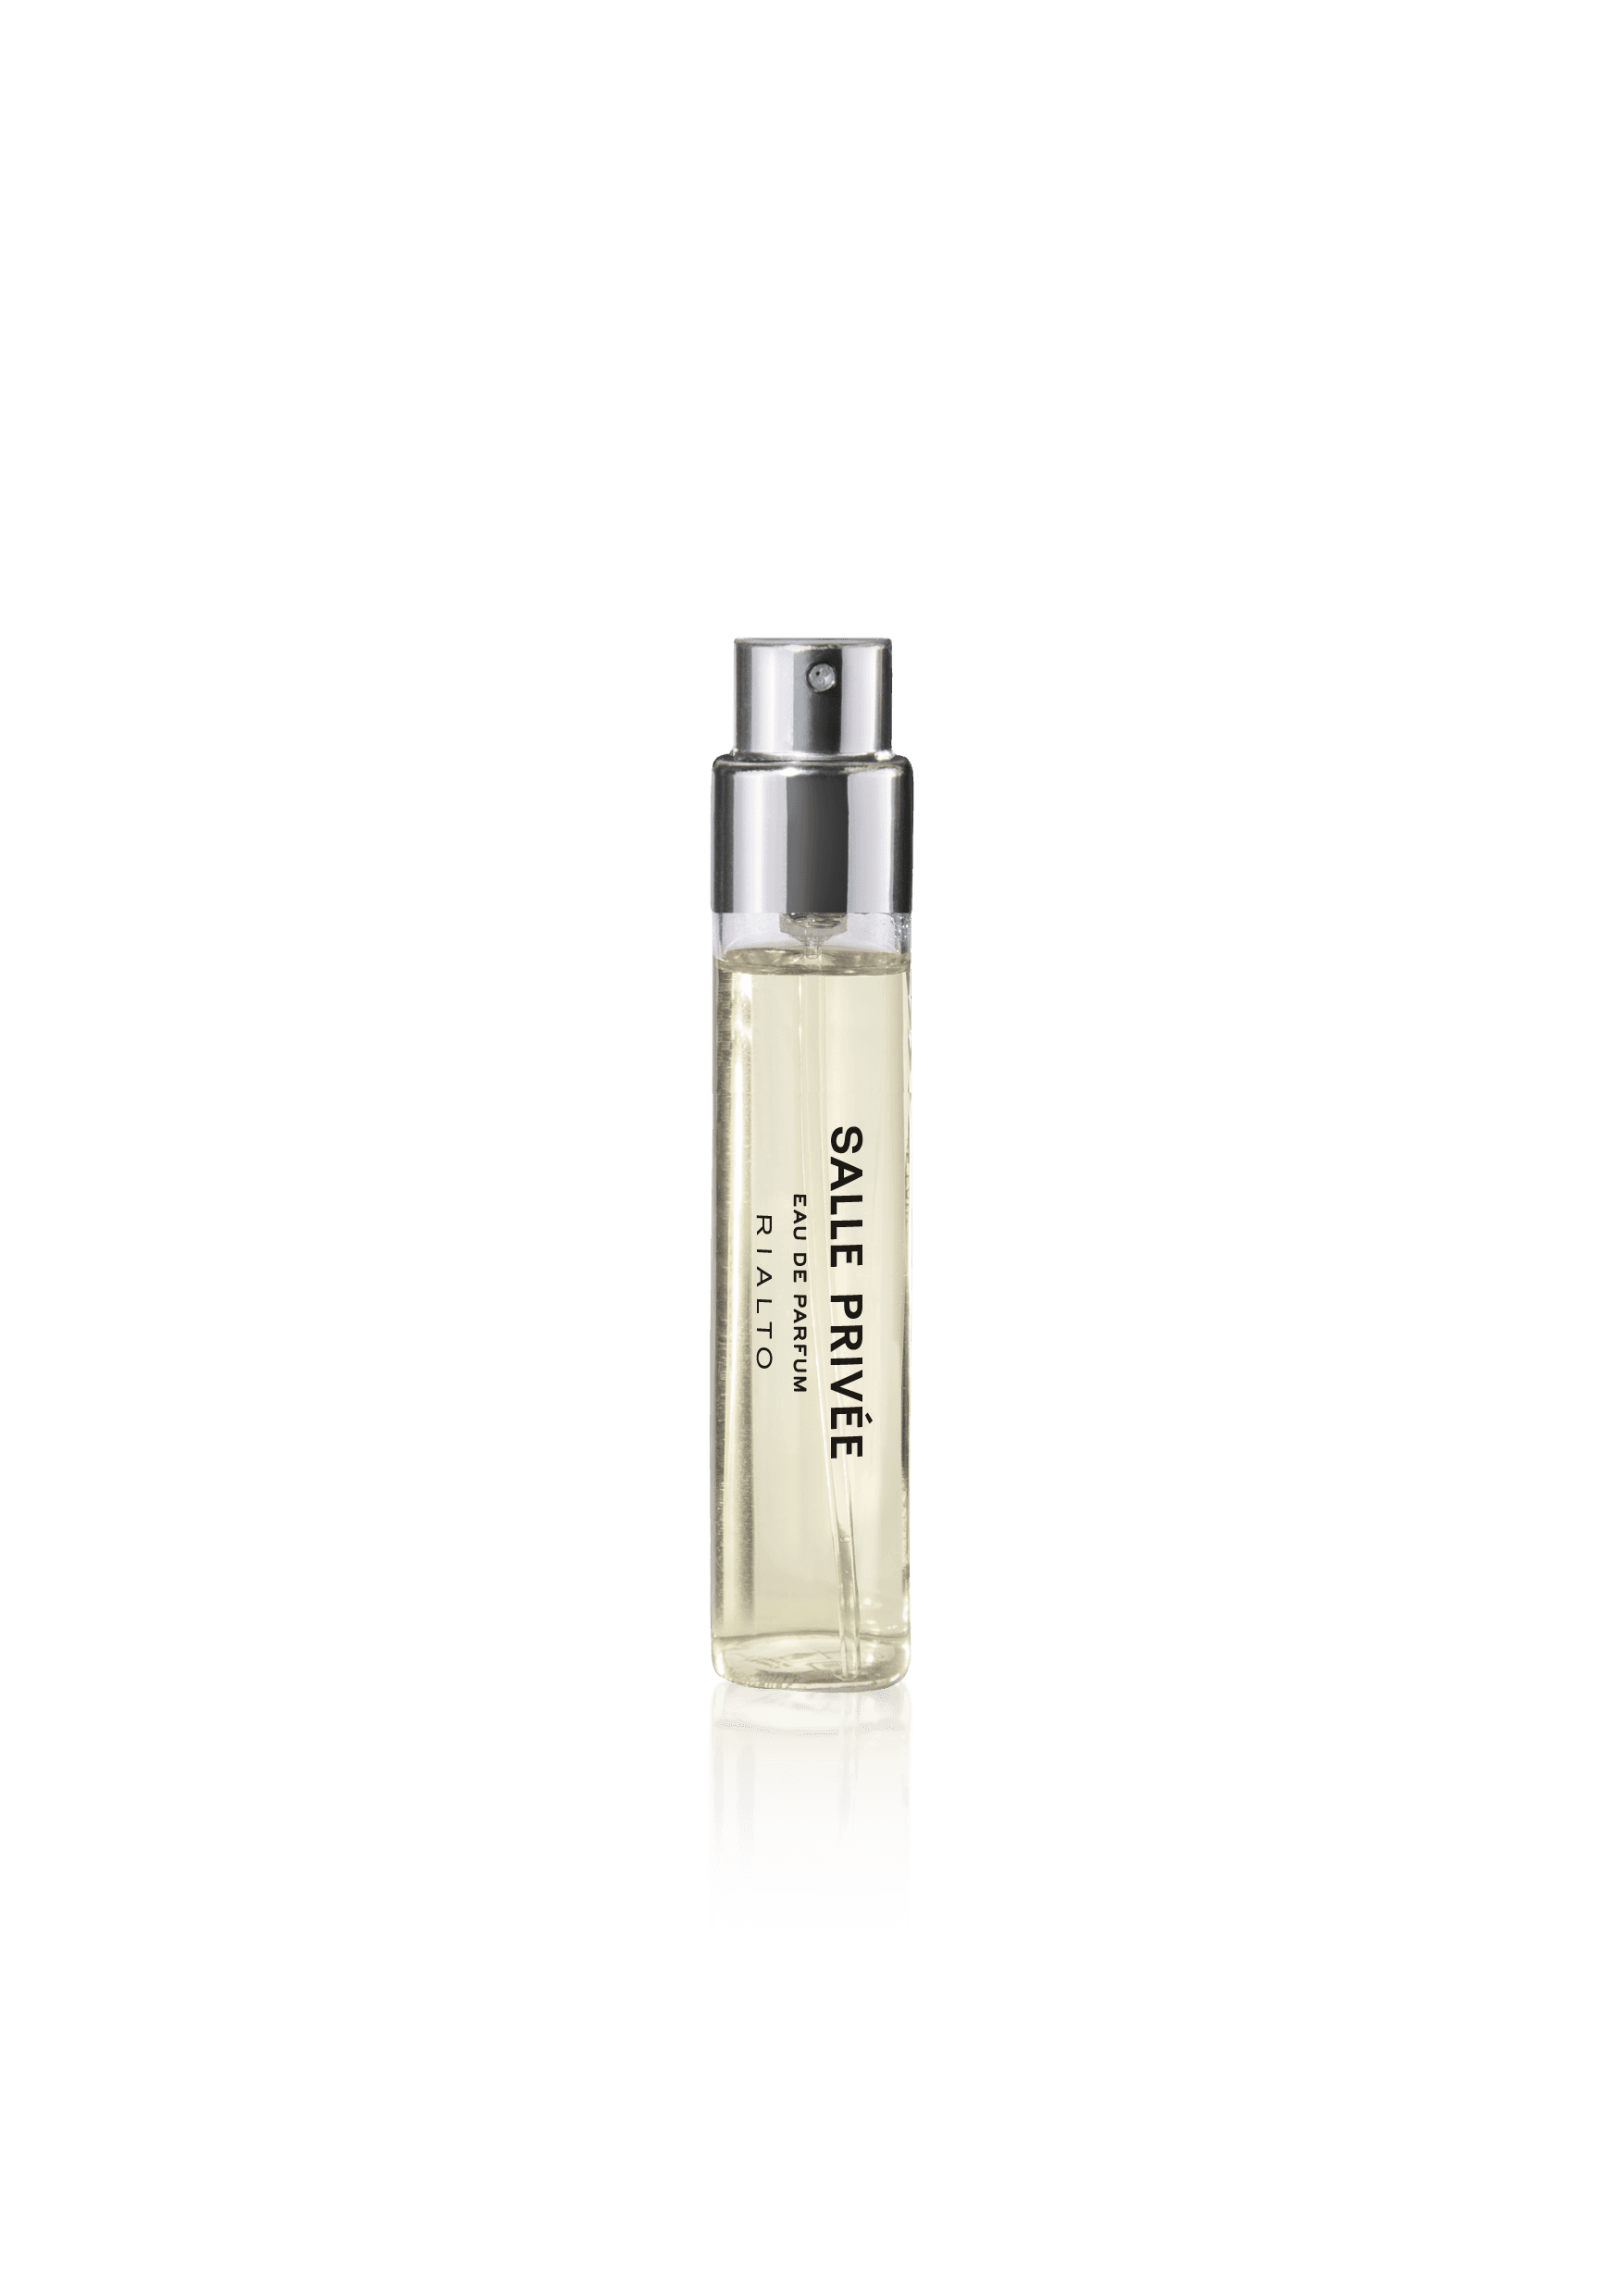 Afbeelding van Rialto 12 ml eau de parfum van het merk Salle Privee